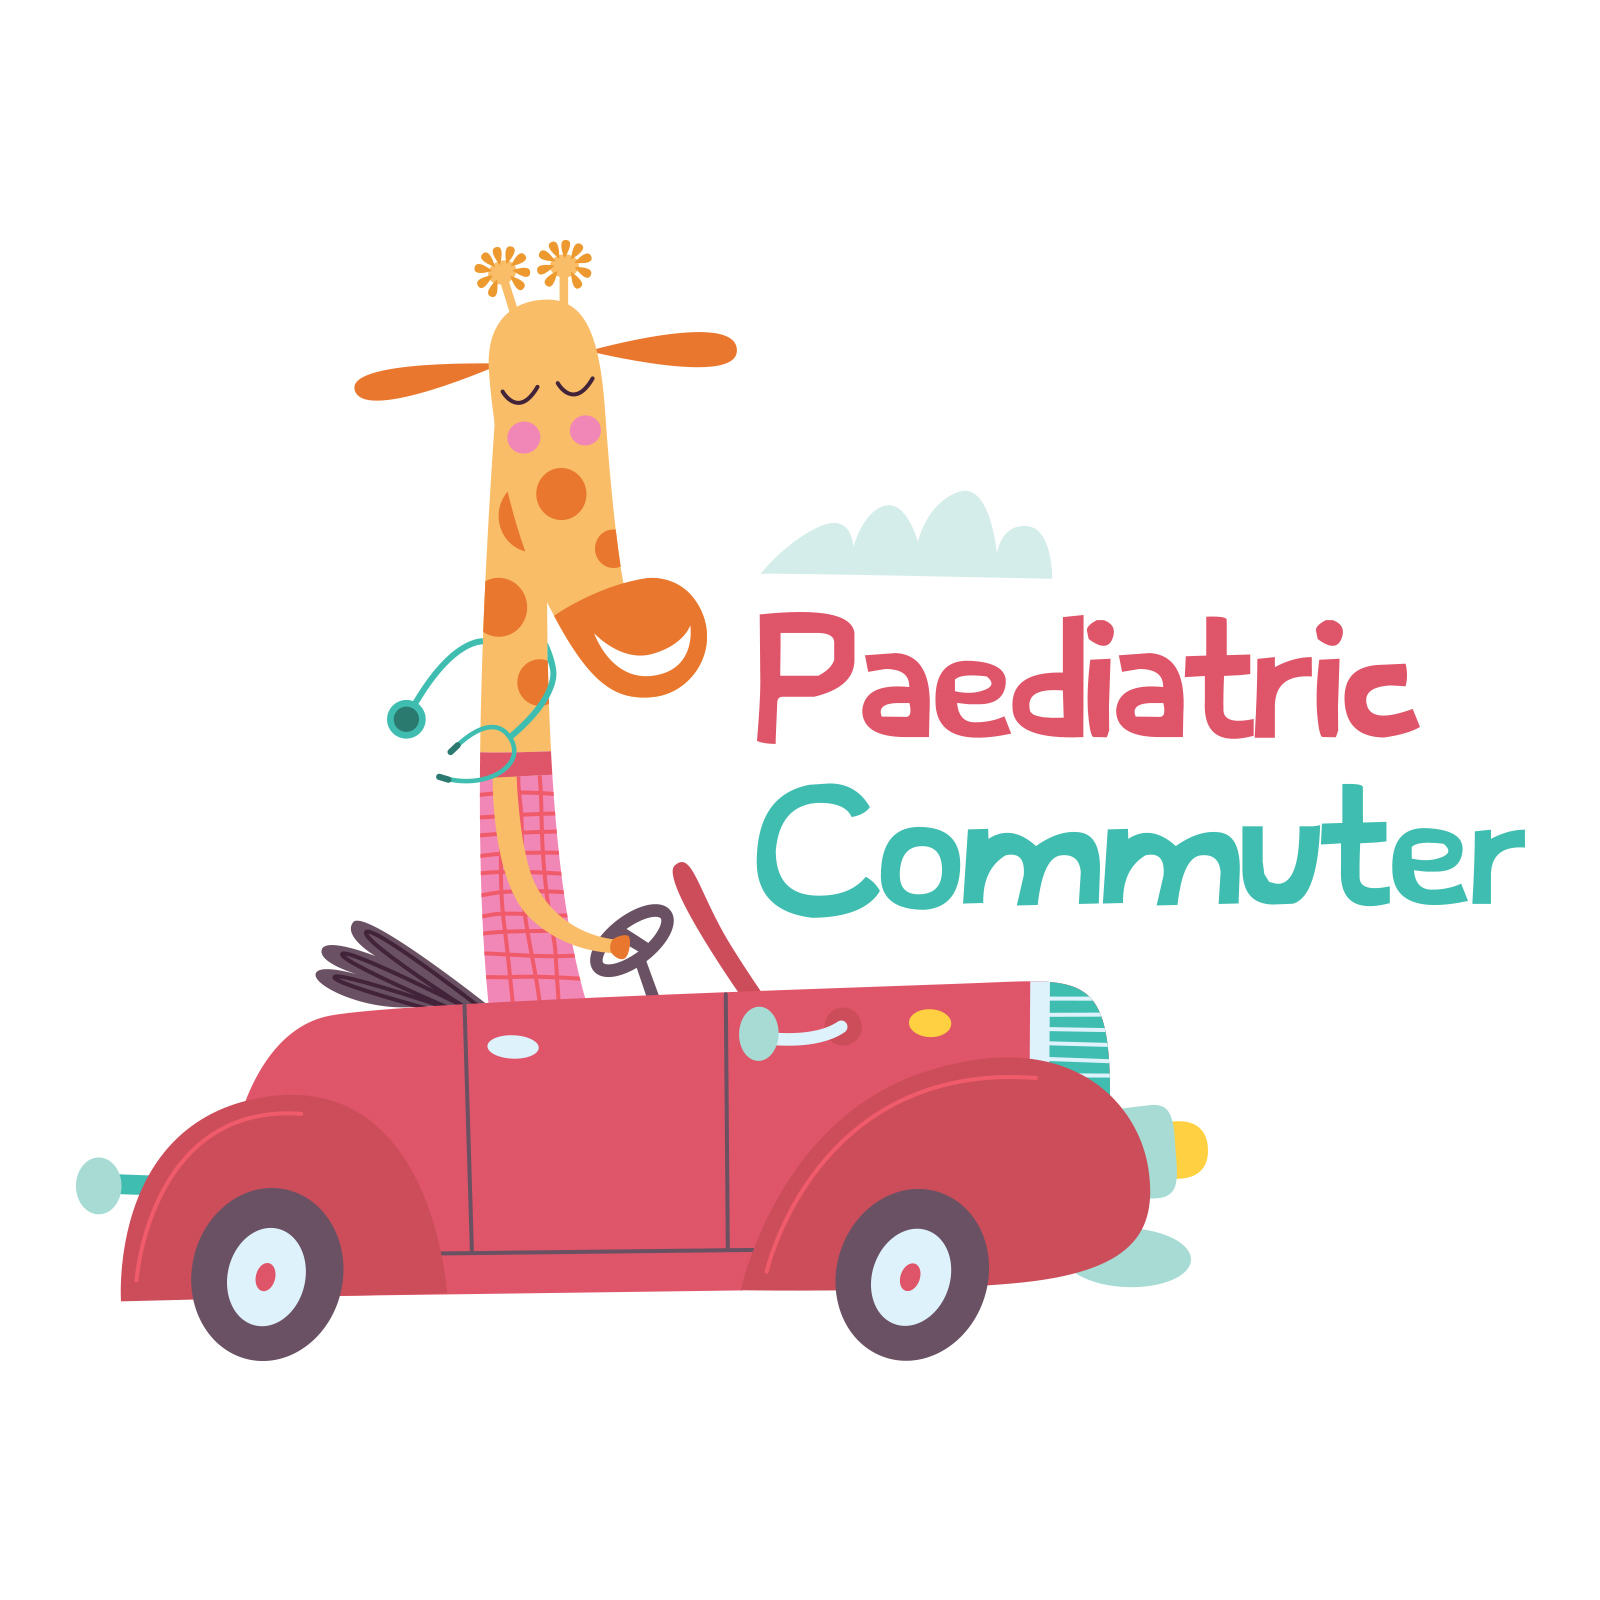 Paediatric Commuter